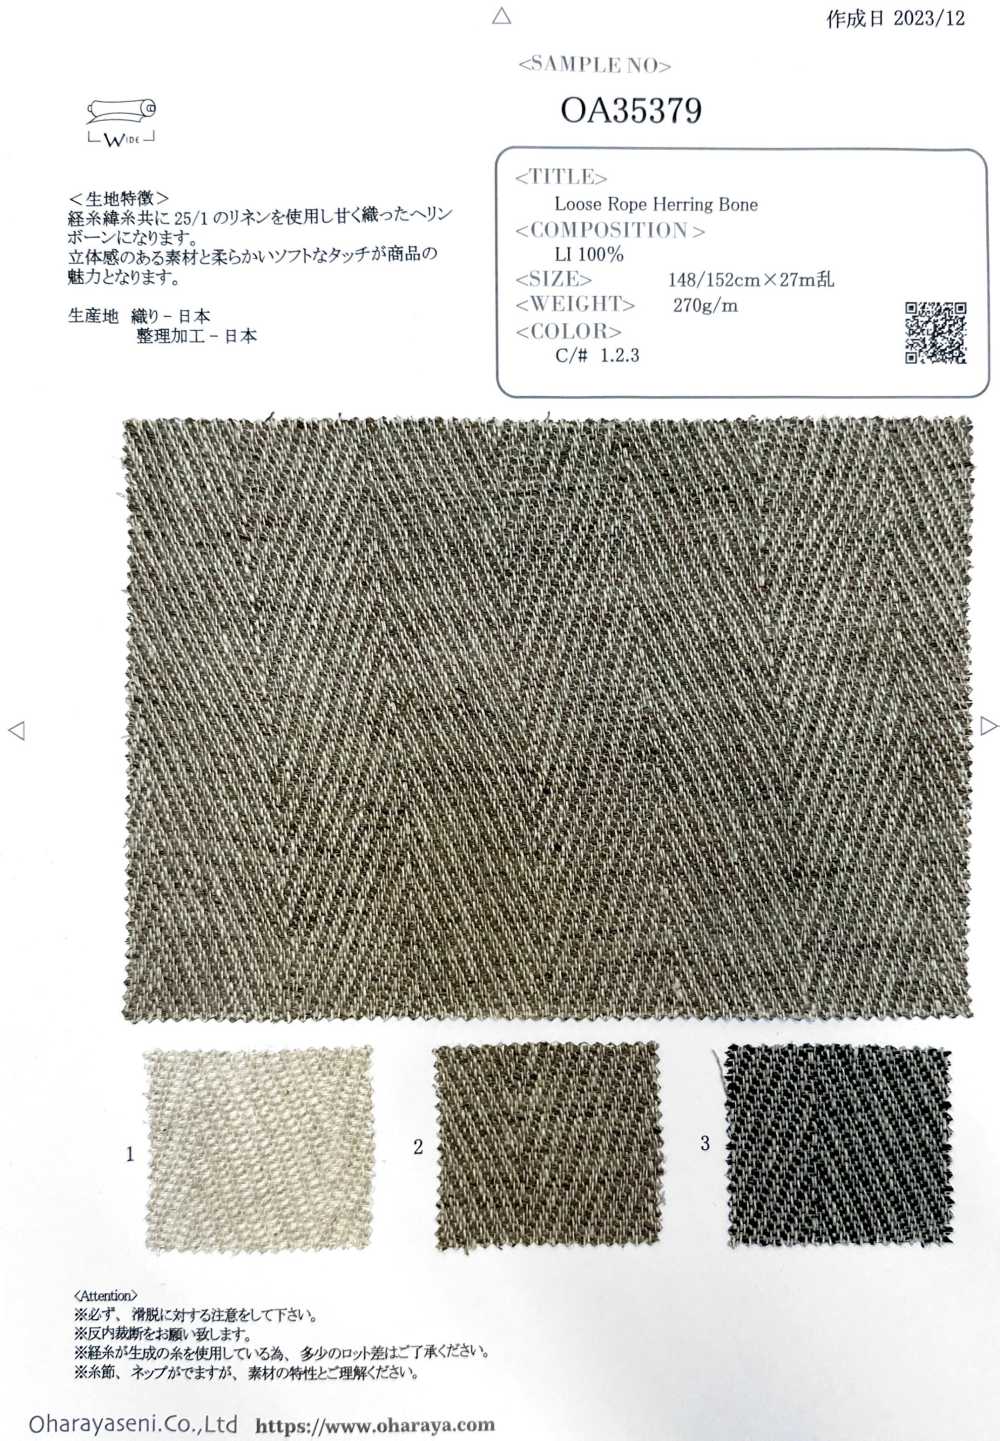 OA35379 Hueso De Arenque De Cuerda Suelta[Fabrica Textil] Oharayaseni